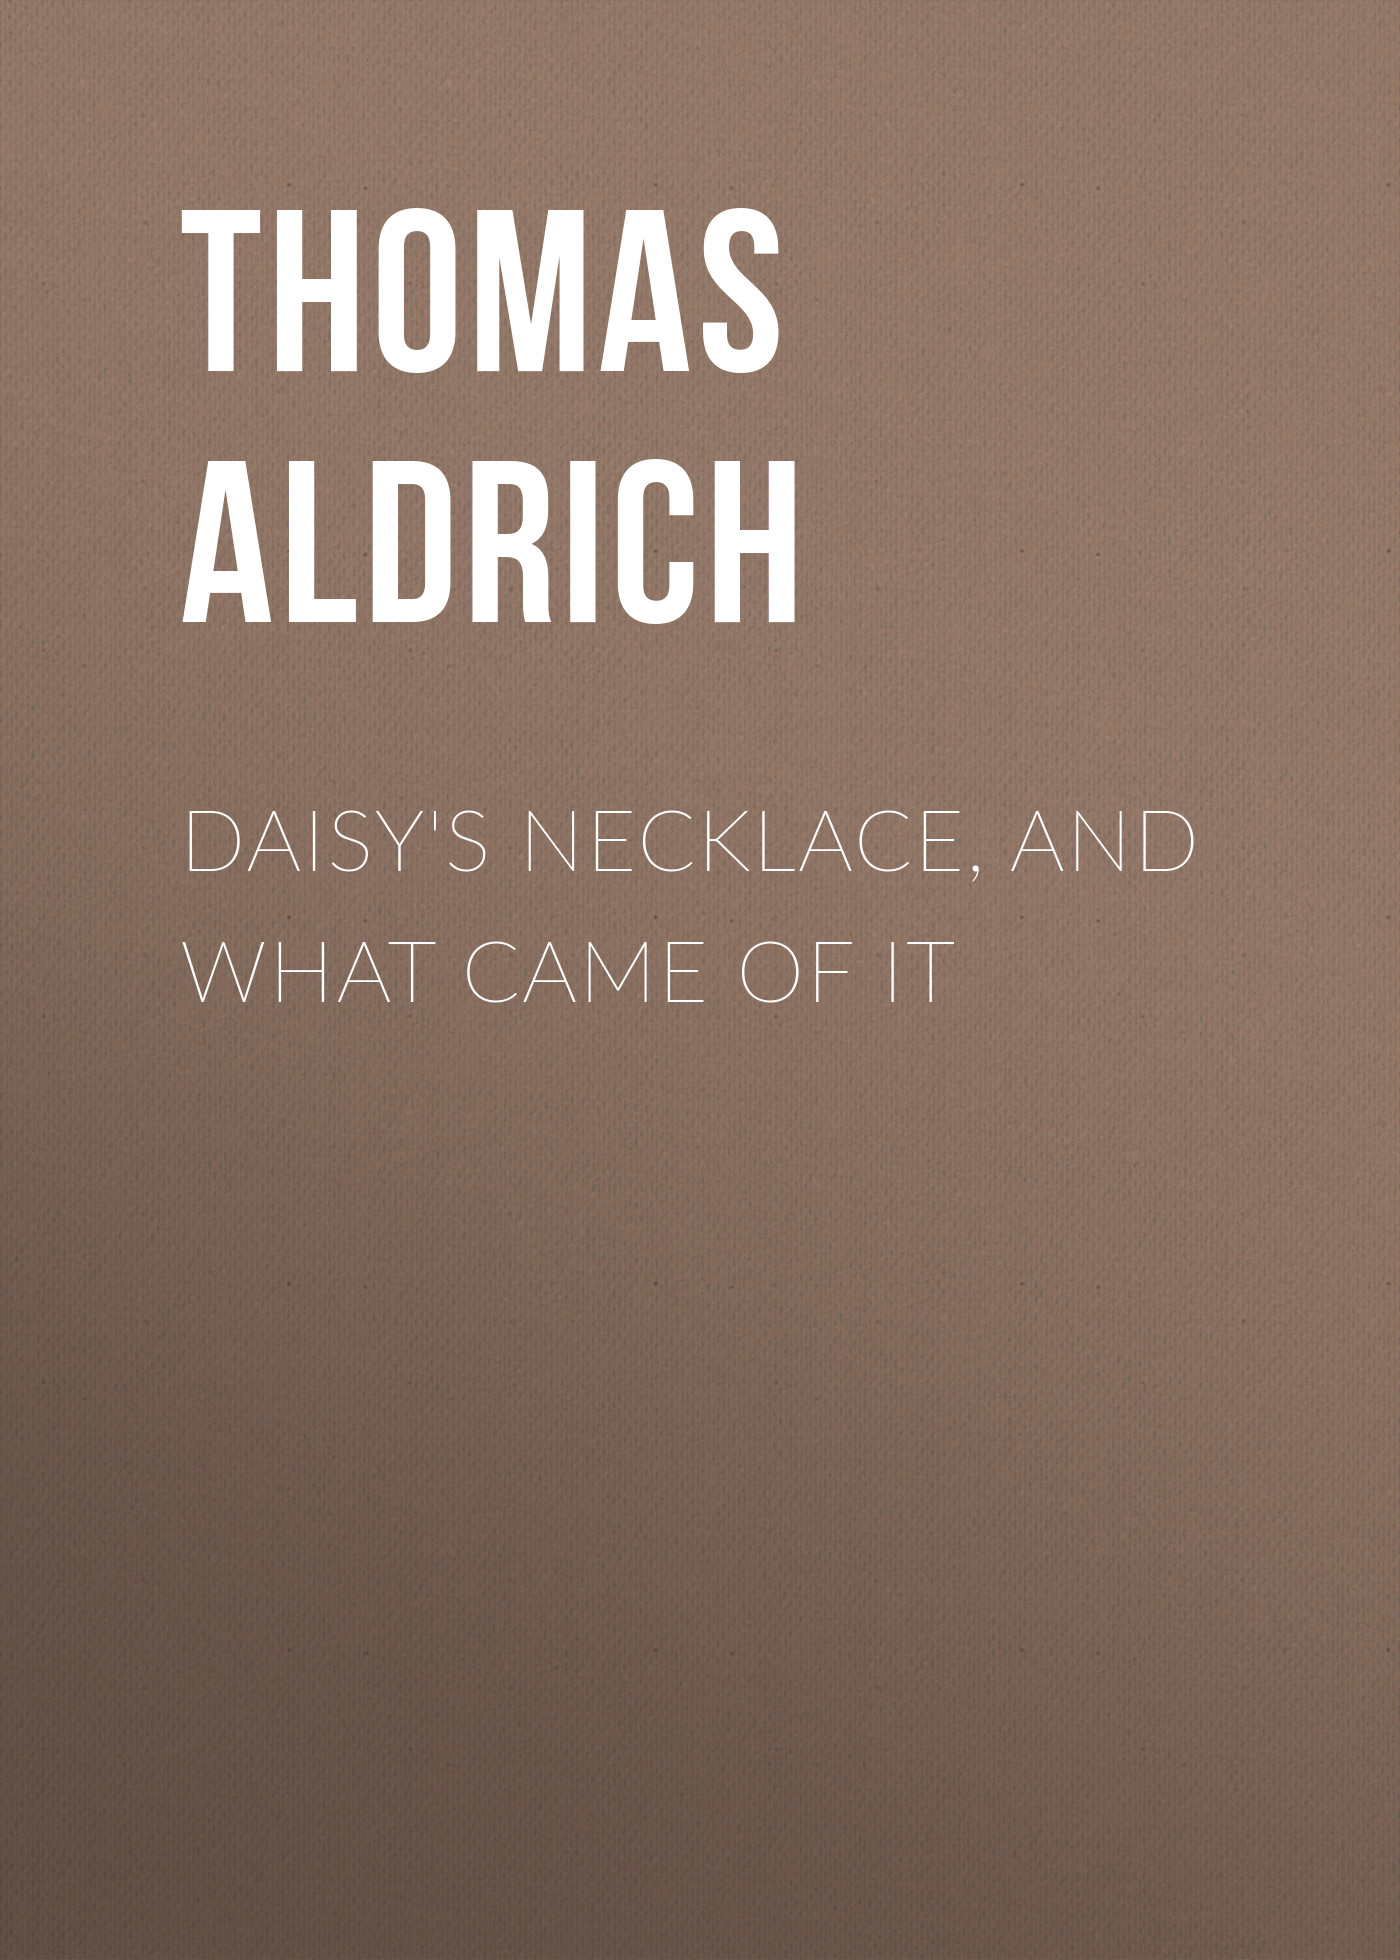 Книга Daisy's Necklace, and What Came of It из серии , созданная Thomas Aldrich, может относится к жанру Зарубежная старинная литература, Зарубежная классика. Стоимость электронной книги Daisy's Necklace, and What Came of It с идентификатором 24166564 составляет 0.90 руб.